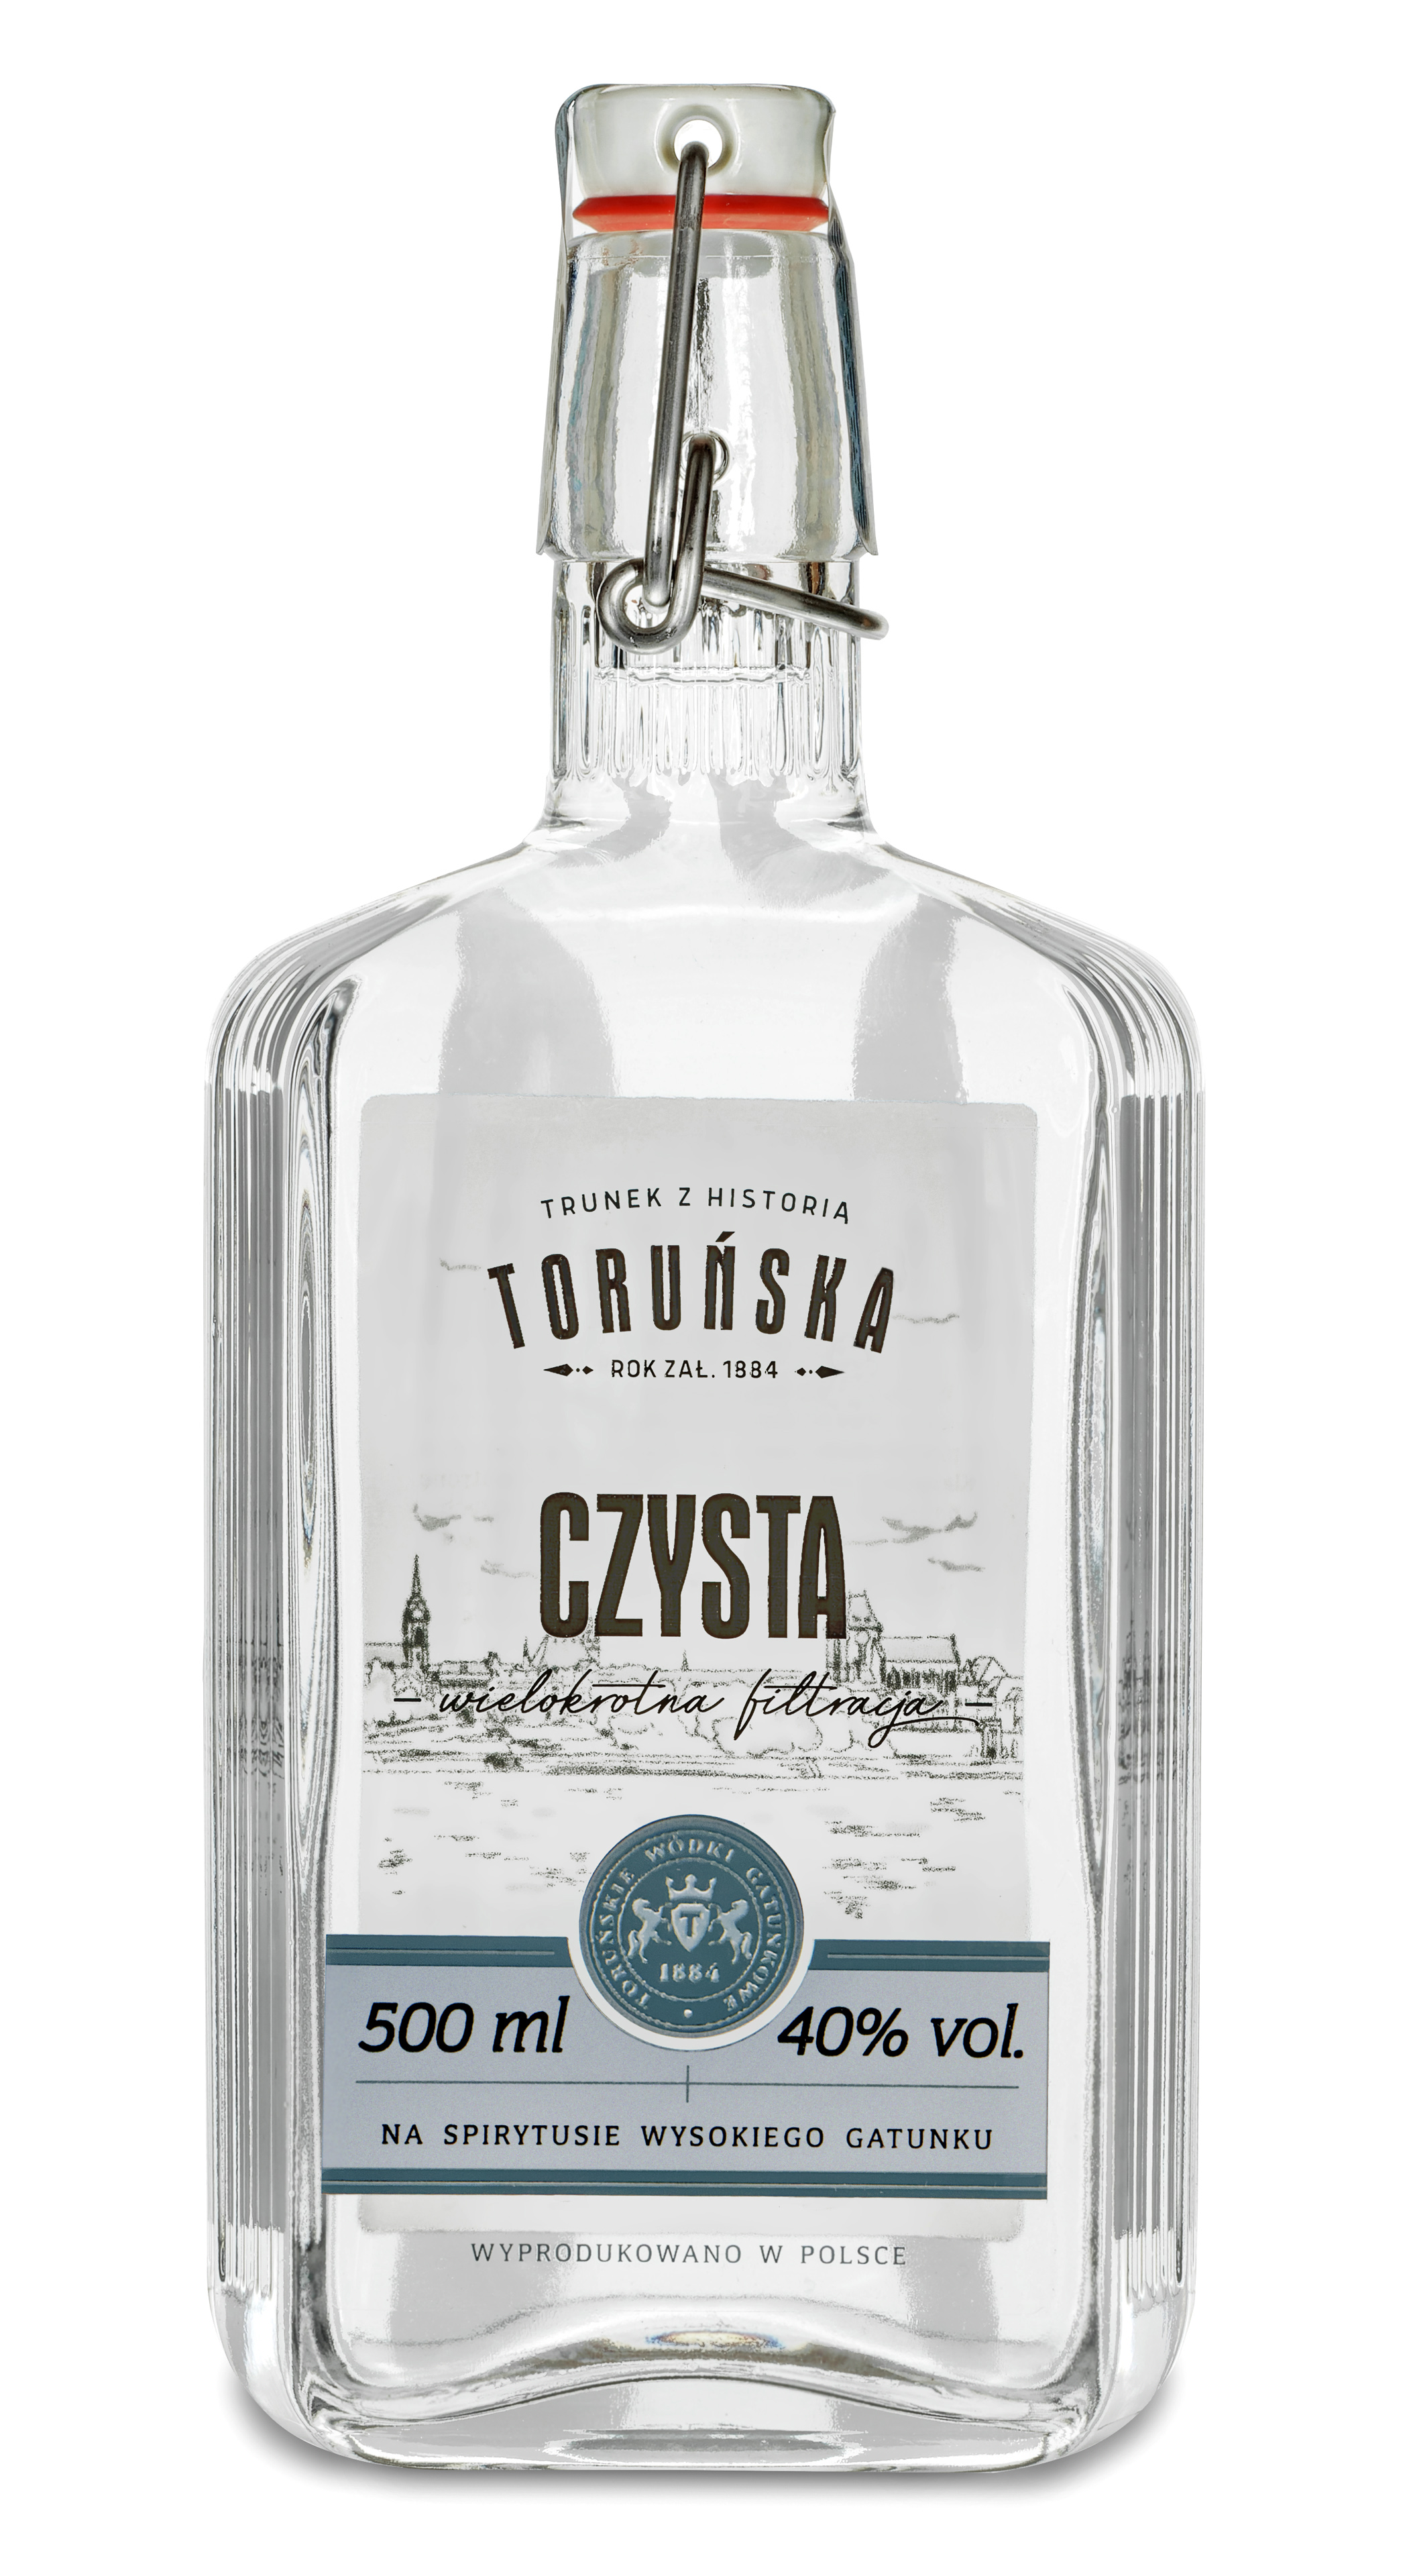 Torunska Wodka Czysta 0,5 l für 11,90 € kaufen für bei Dr. Kochan  Schnapskultur Fachgeschäft und Onlineshop | Dr. Kochan Schnapskultur